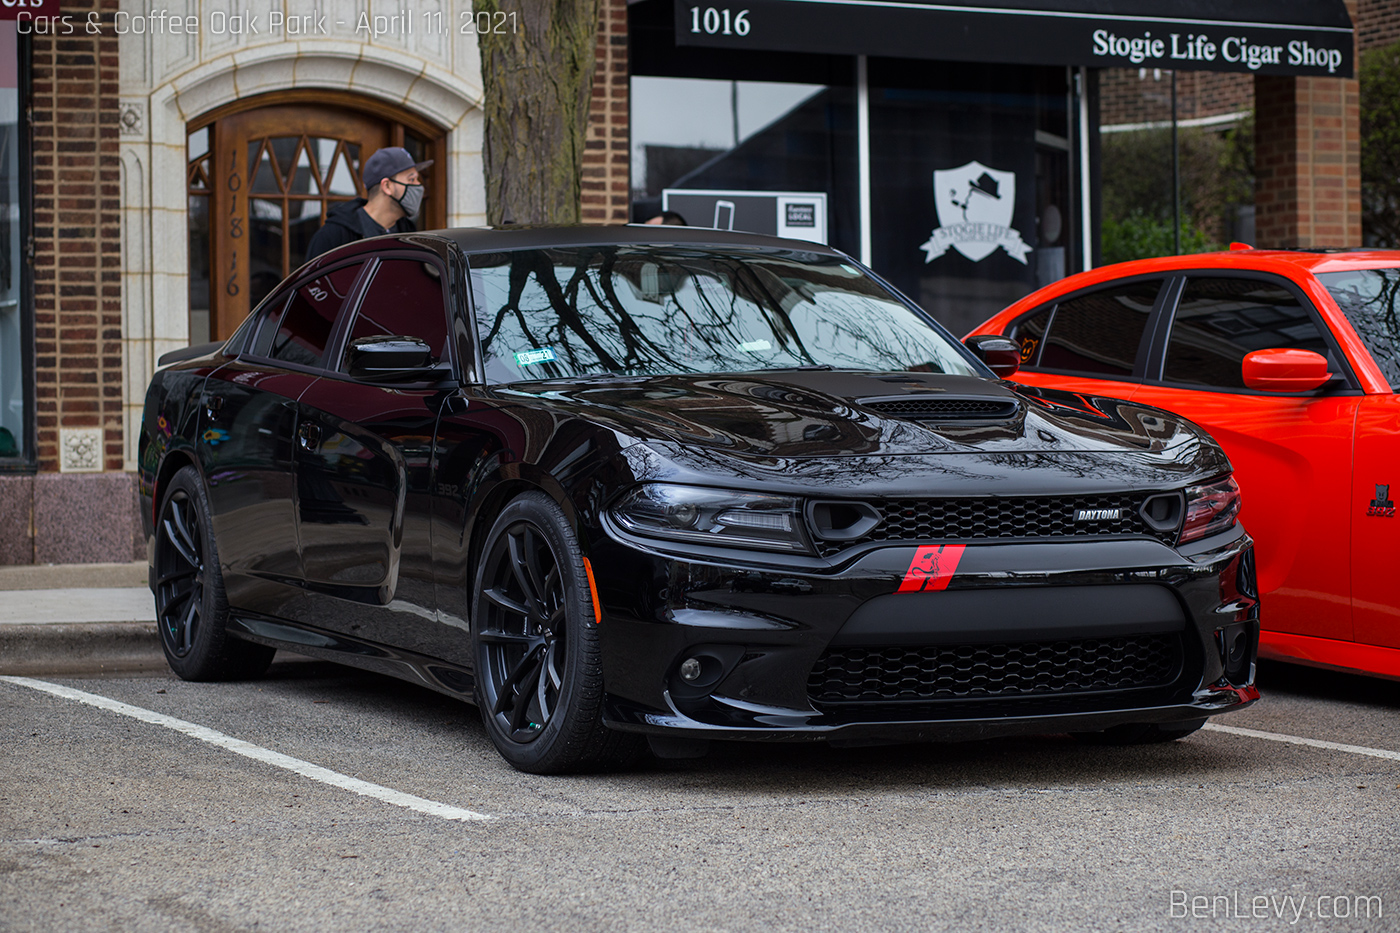 Black Dodge Charger Daytona